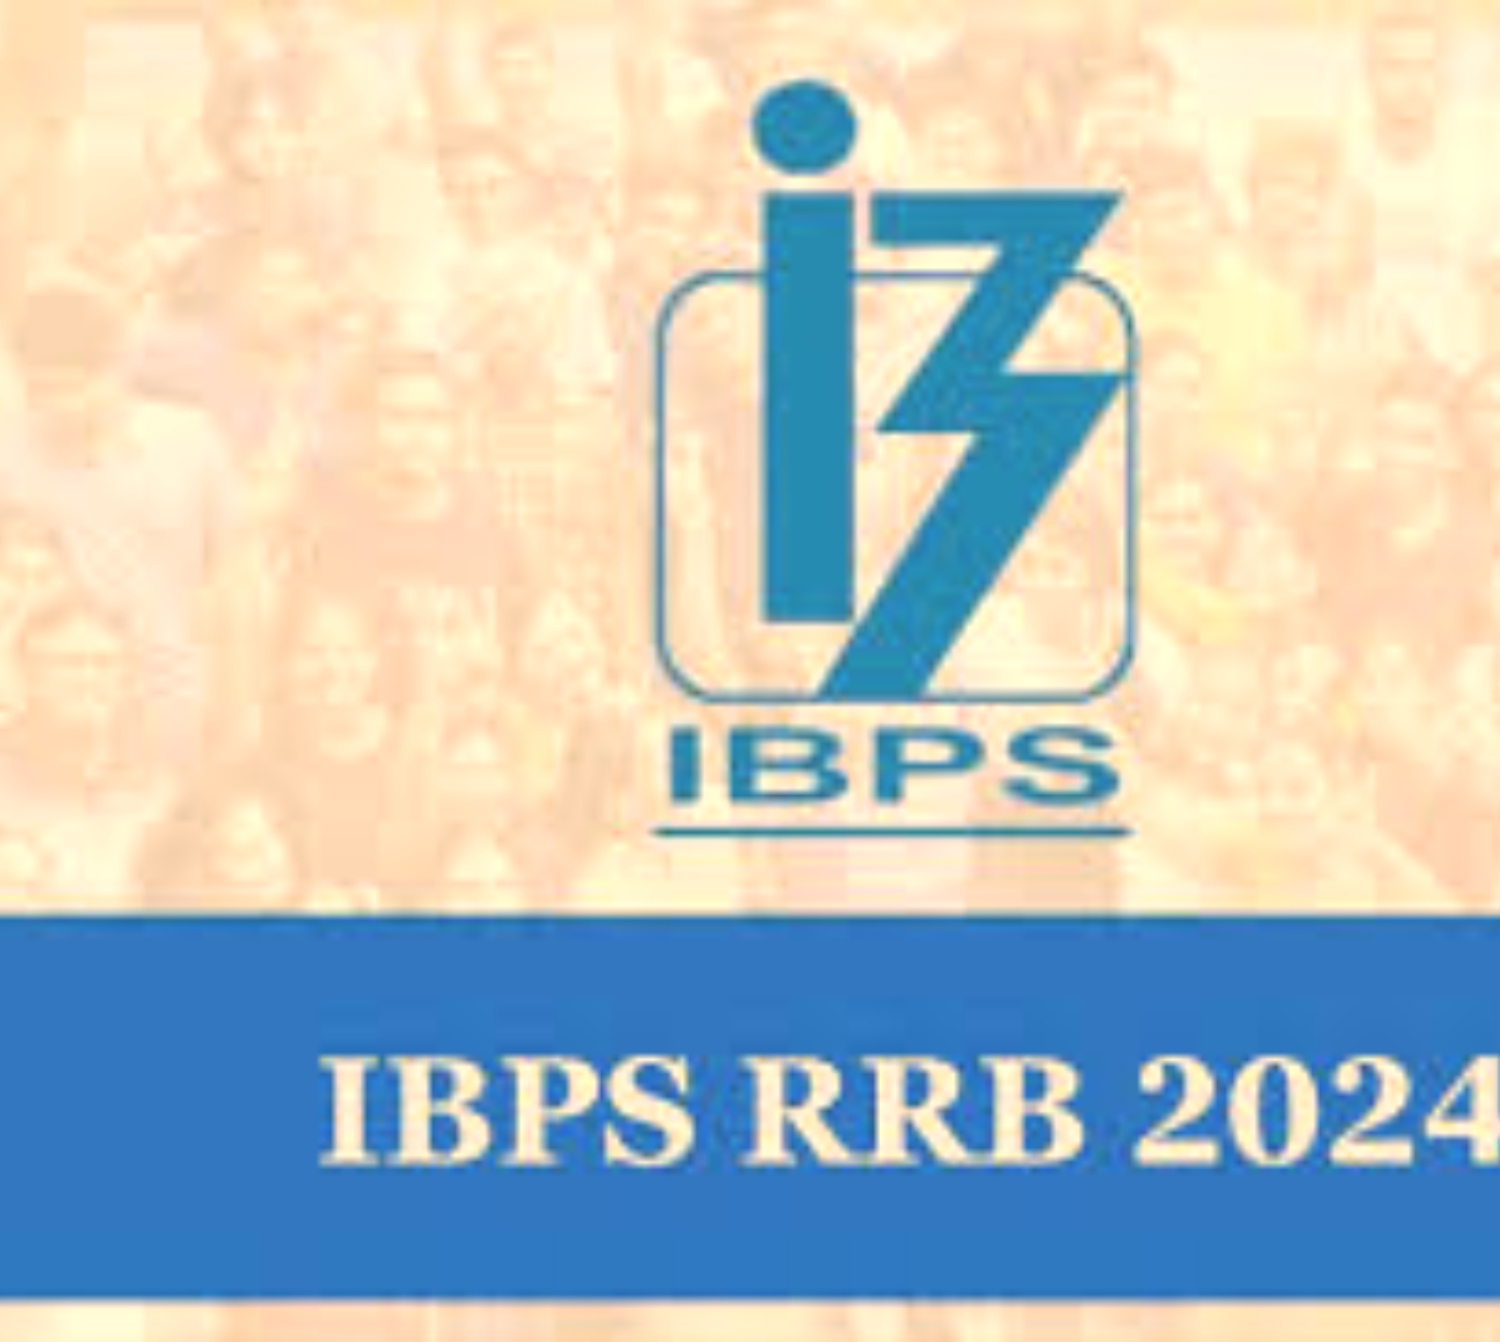 IBPS RRB क्लर्क प्री एग्जामिनेशन के लिए एडमिट कार्ड जल्द होंगे जारी, 10 अगस्त को होनी है परीक्षा